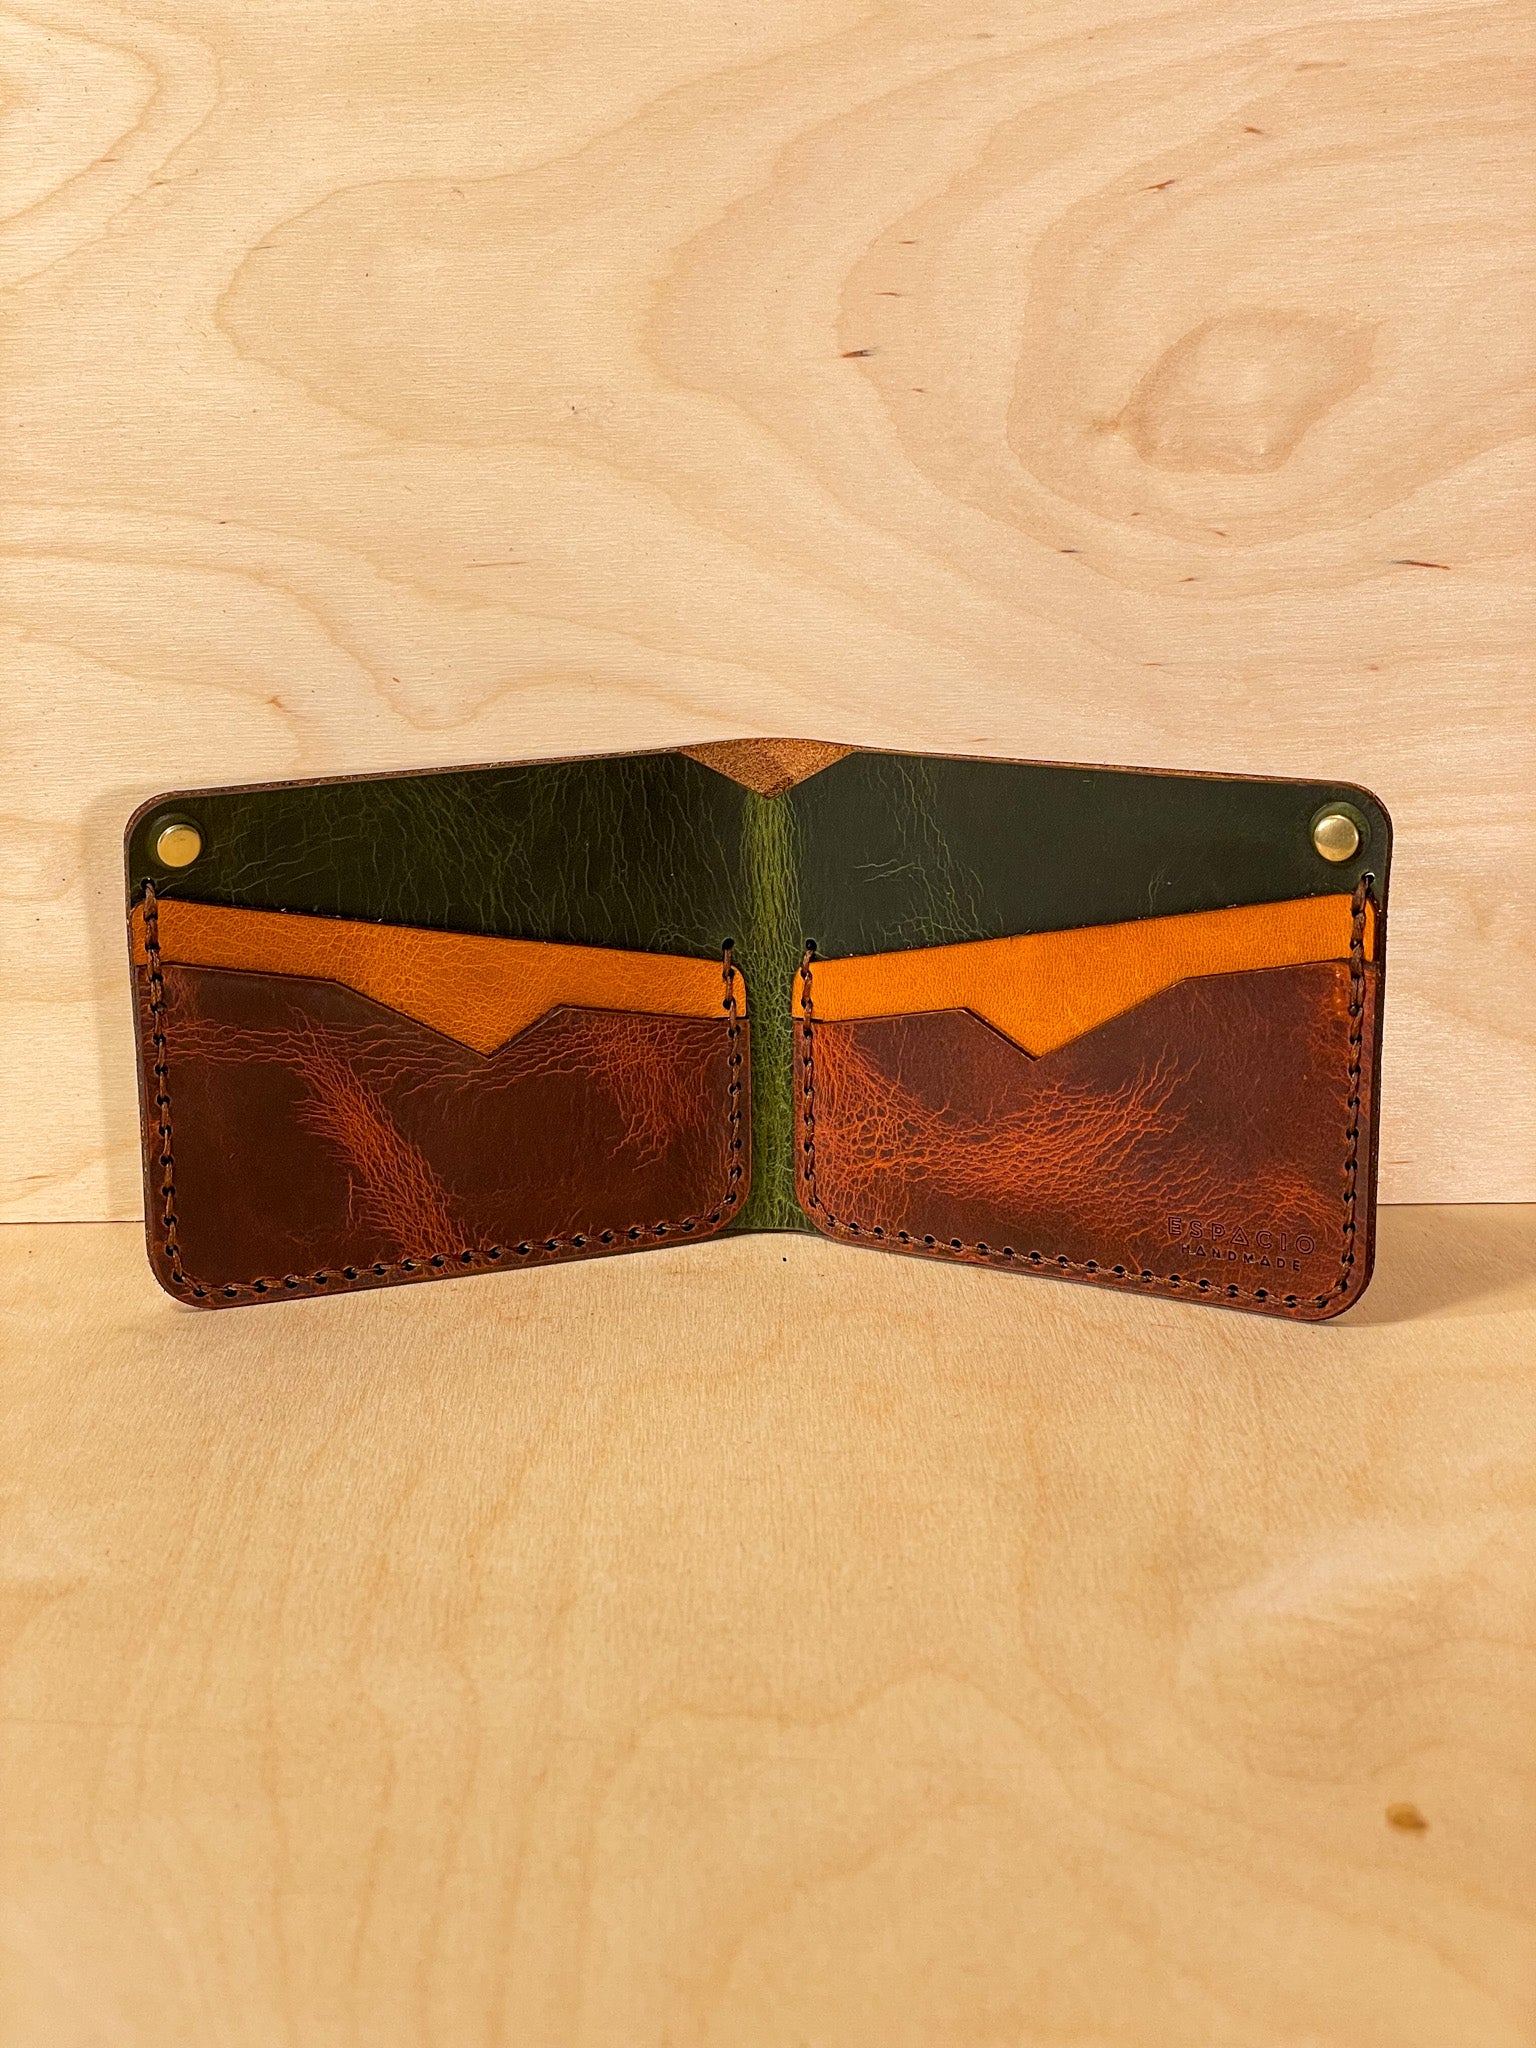 Gringo Bifold Leather Wallet OOAK 2